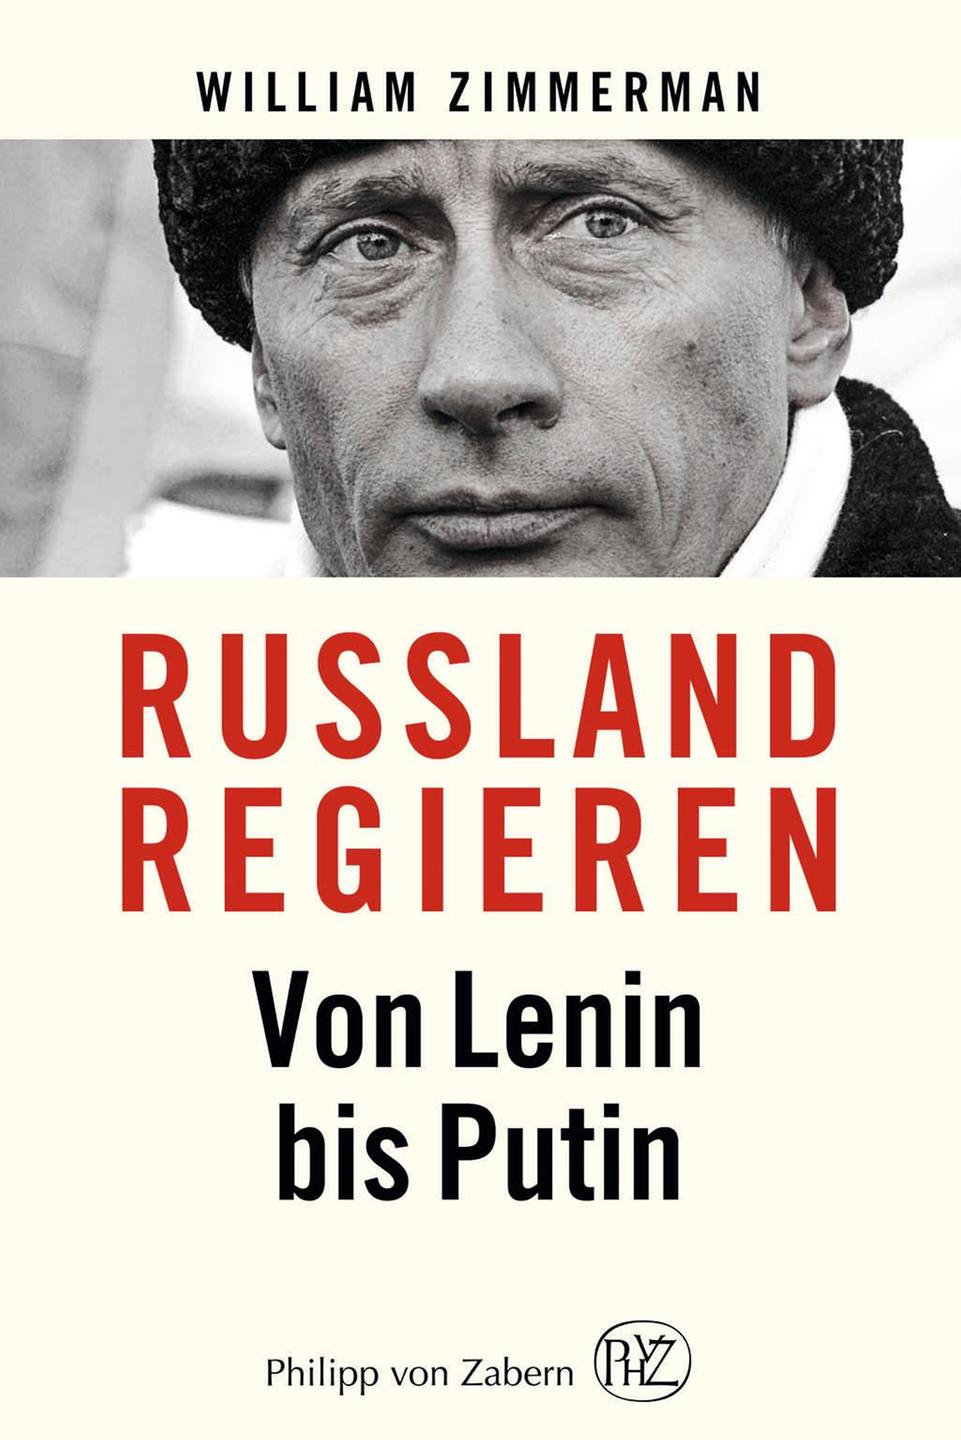 Buchcover "Russland regieren. Von Lenin bis Putin" von William Zimmerman